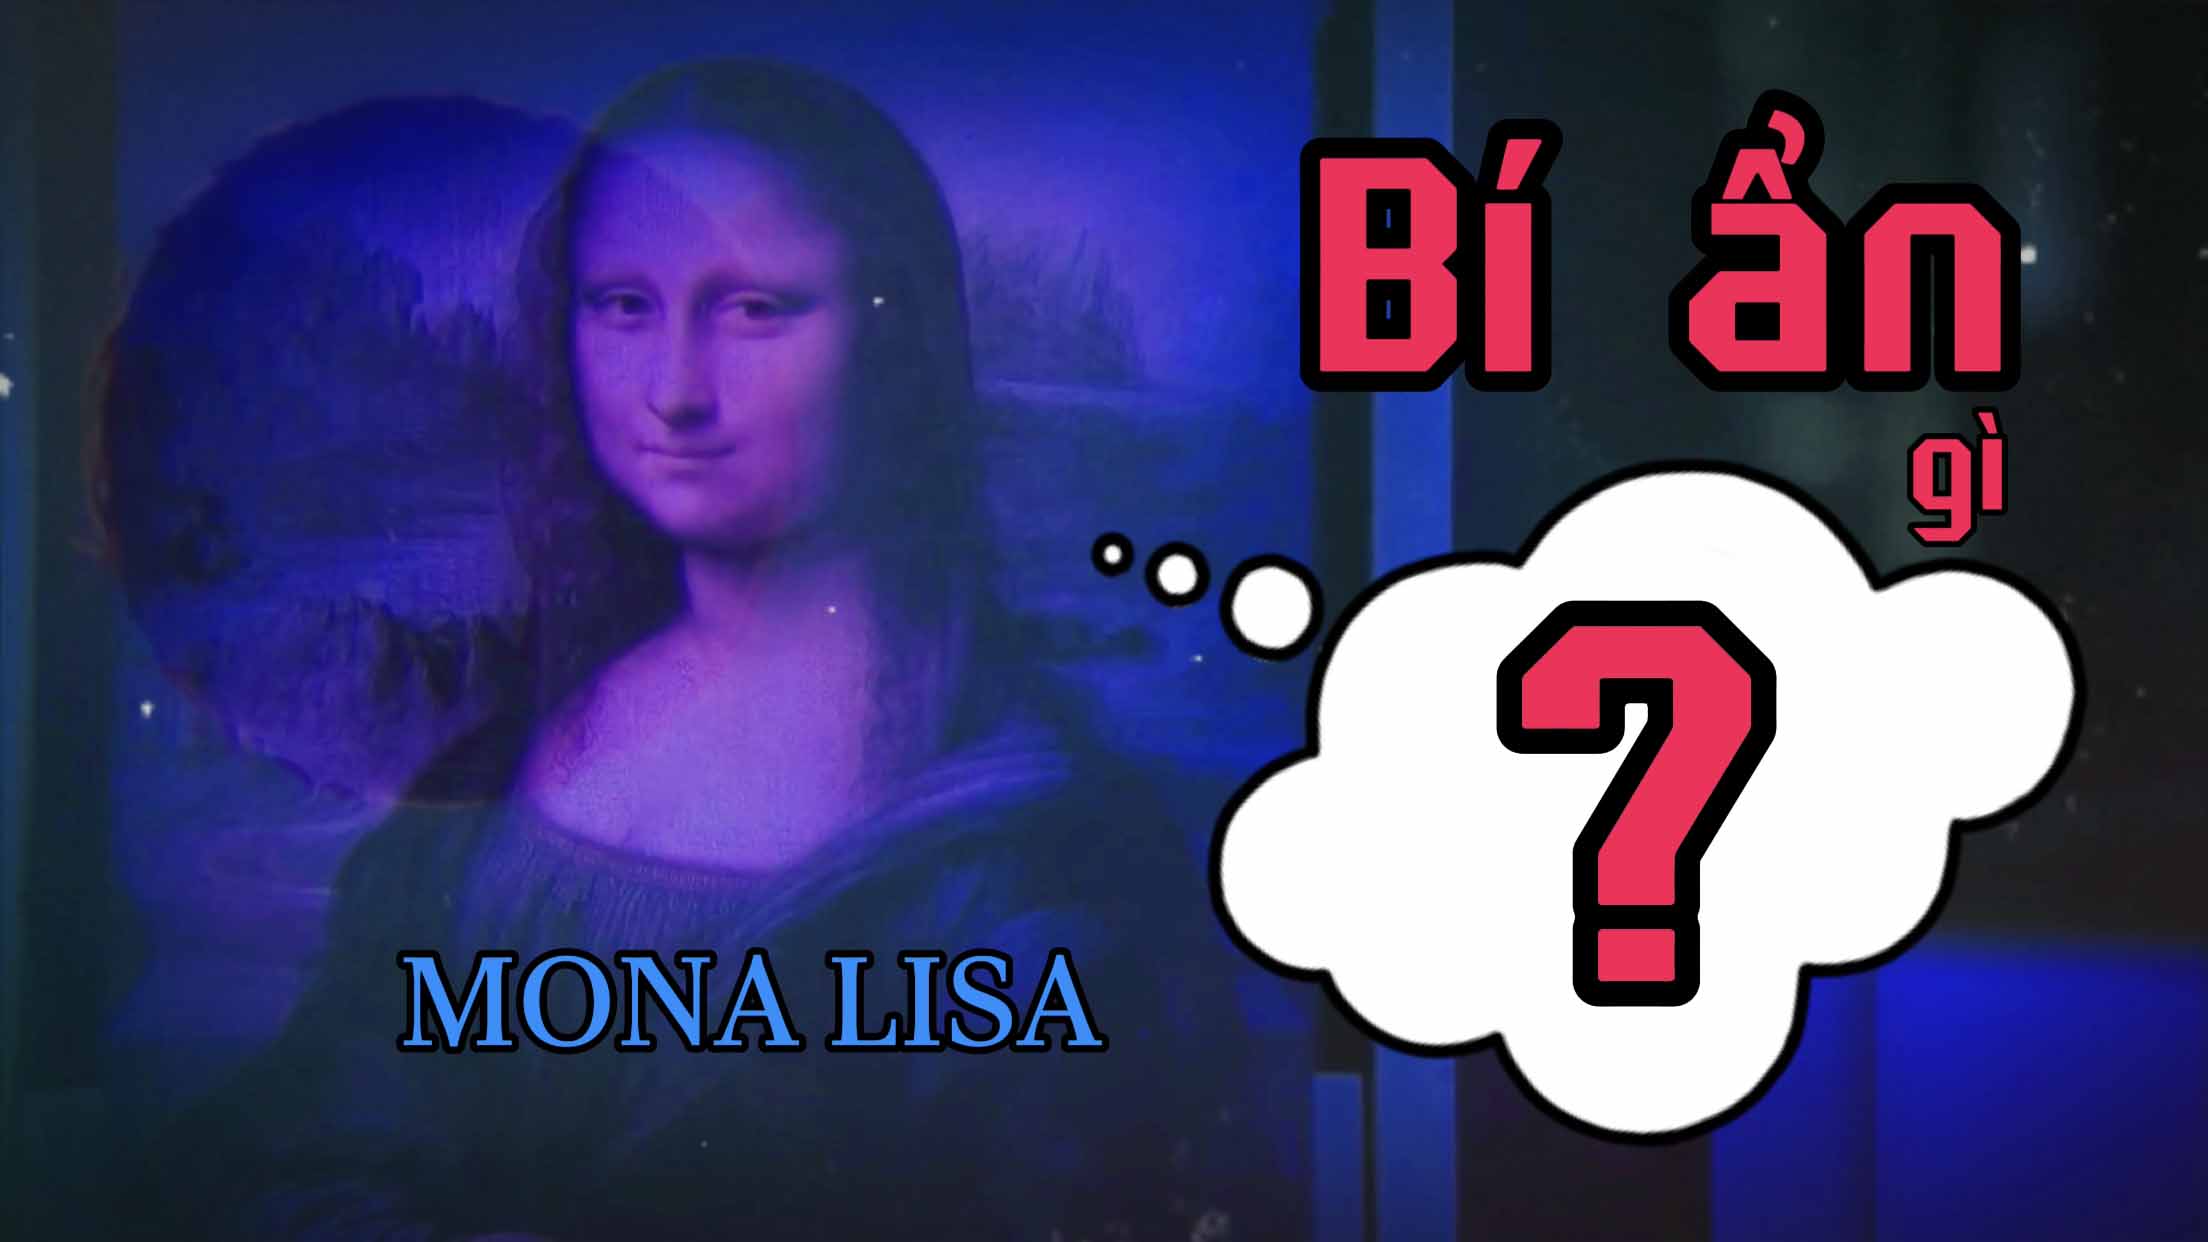 Bí ẩn trong bức tranh Mona Lisa của danh họa Leonardo da Vinci là gì?